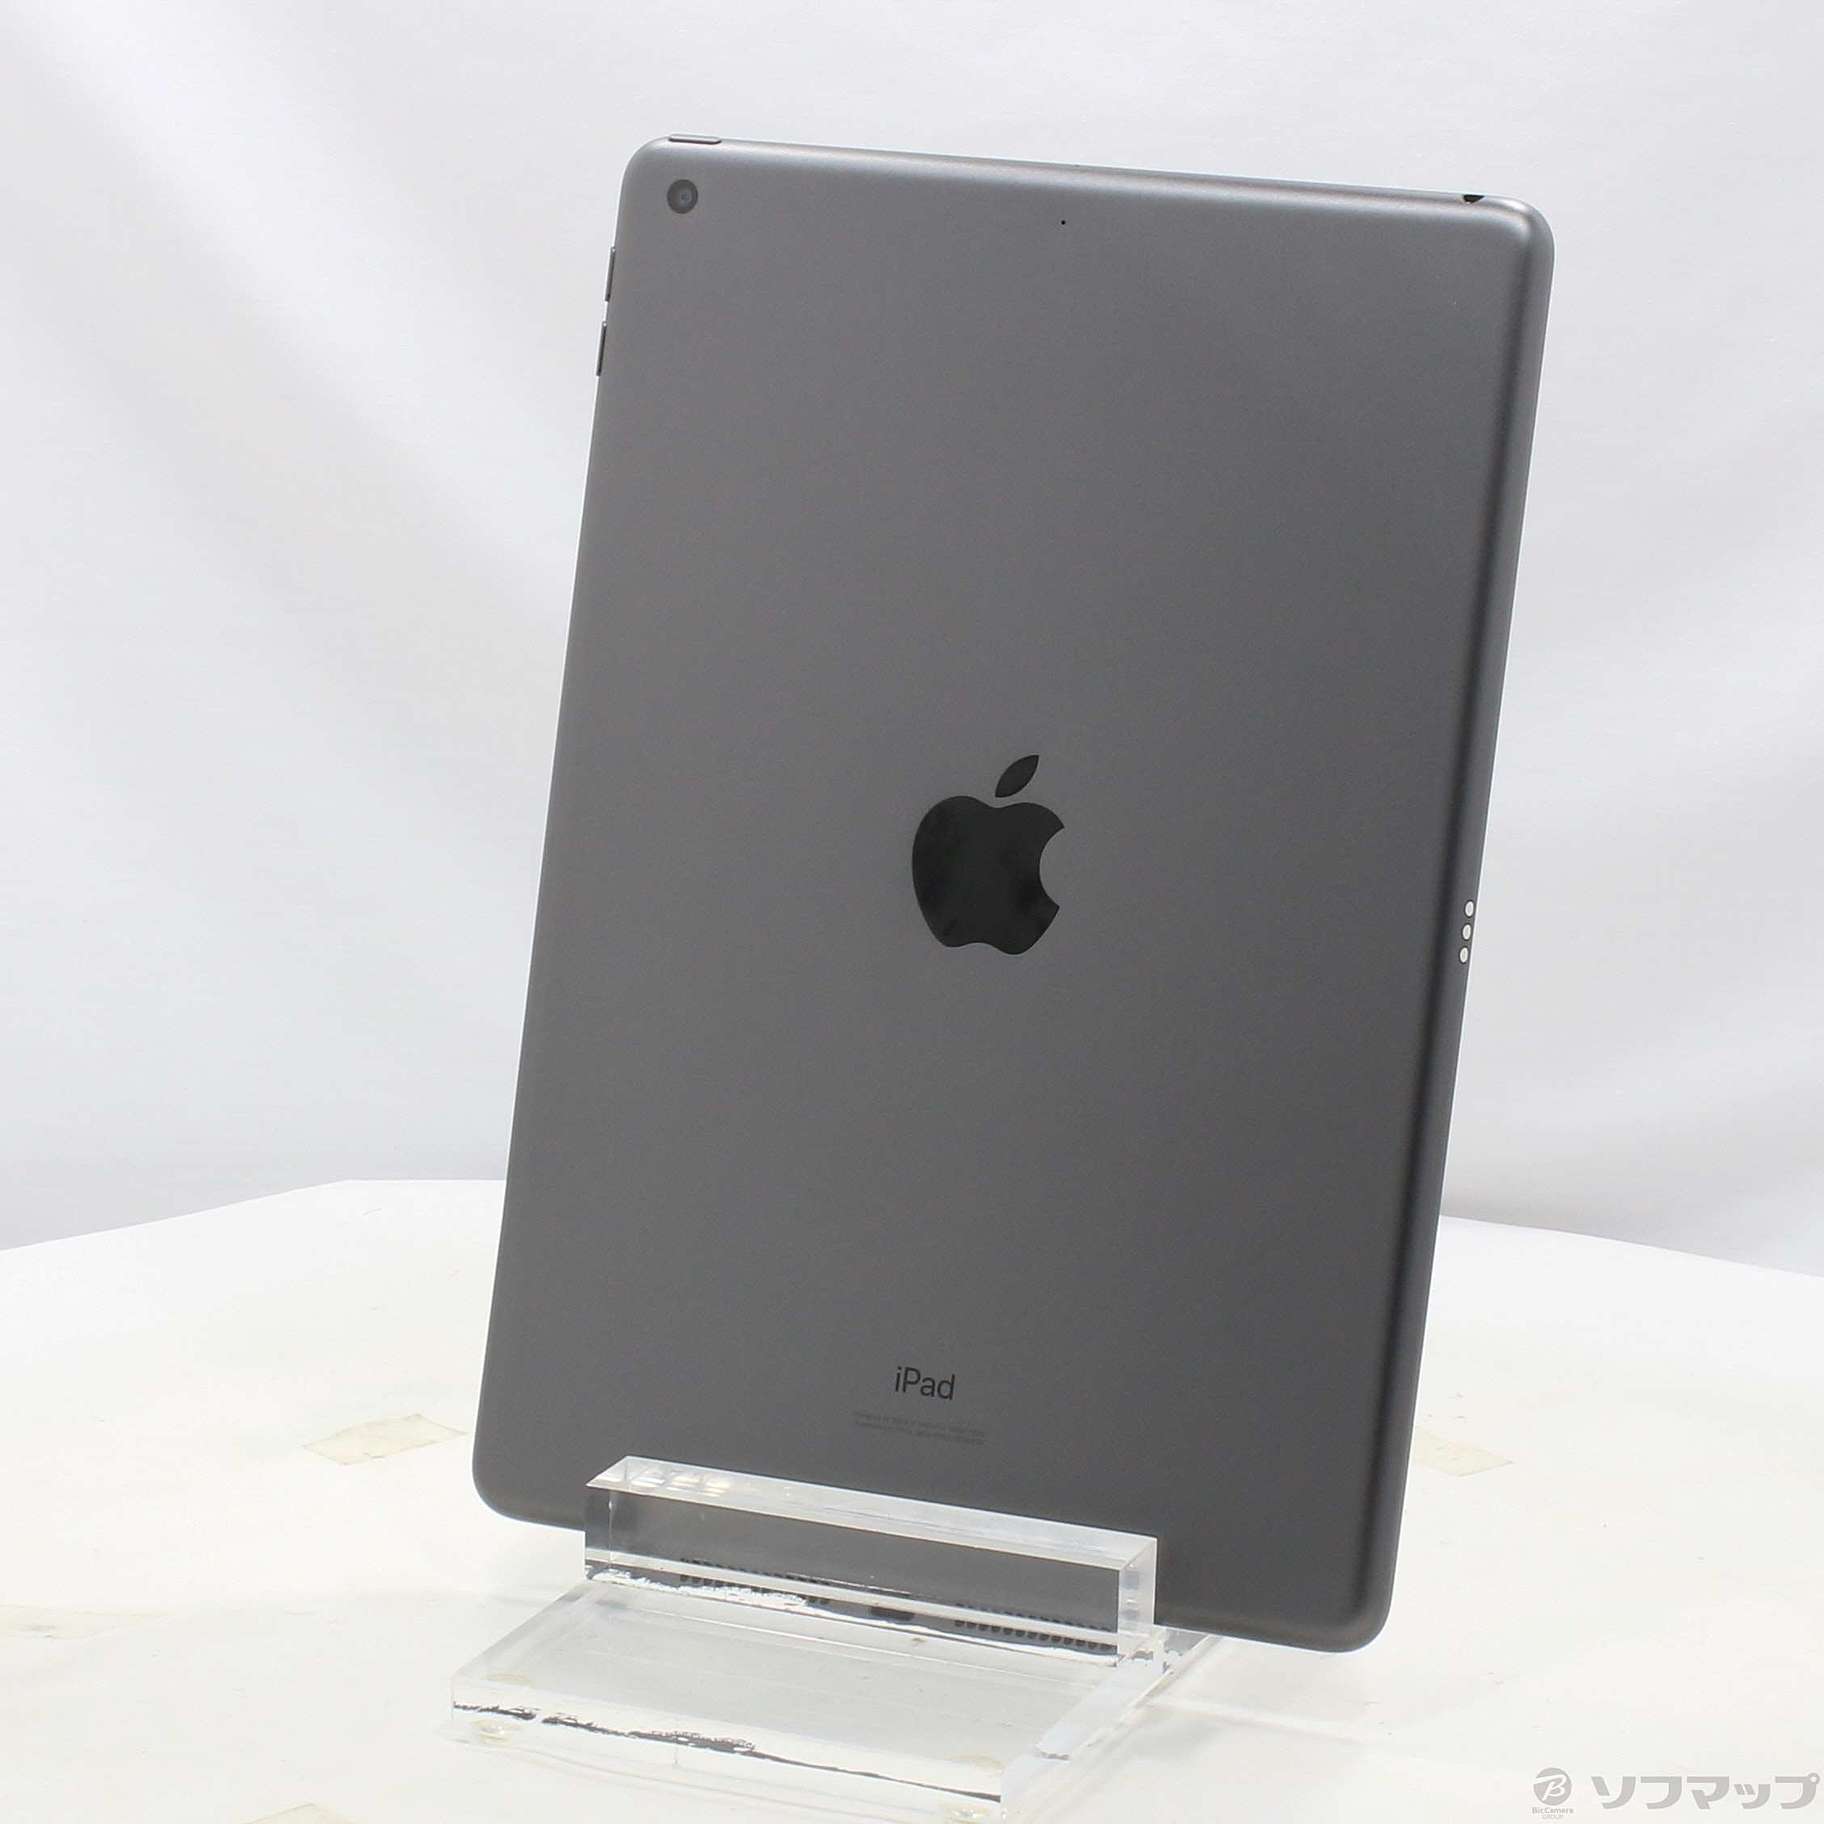 (中古)Apple iPad 第7世代 32GB スペースグレイ MW742LL/A Wi-Fi(344-ud)